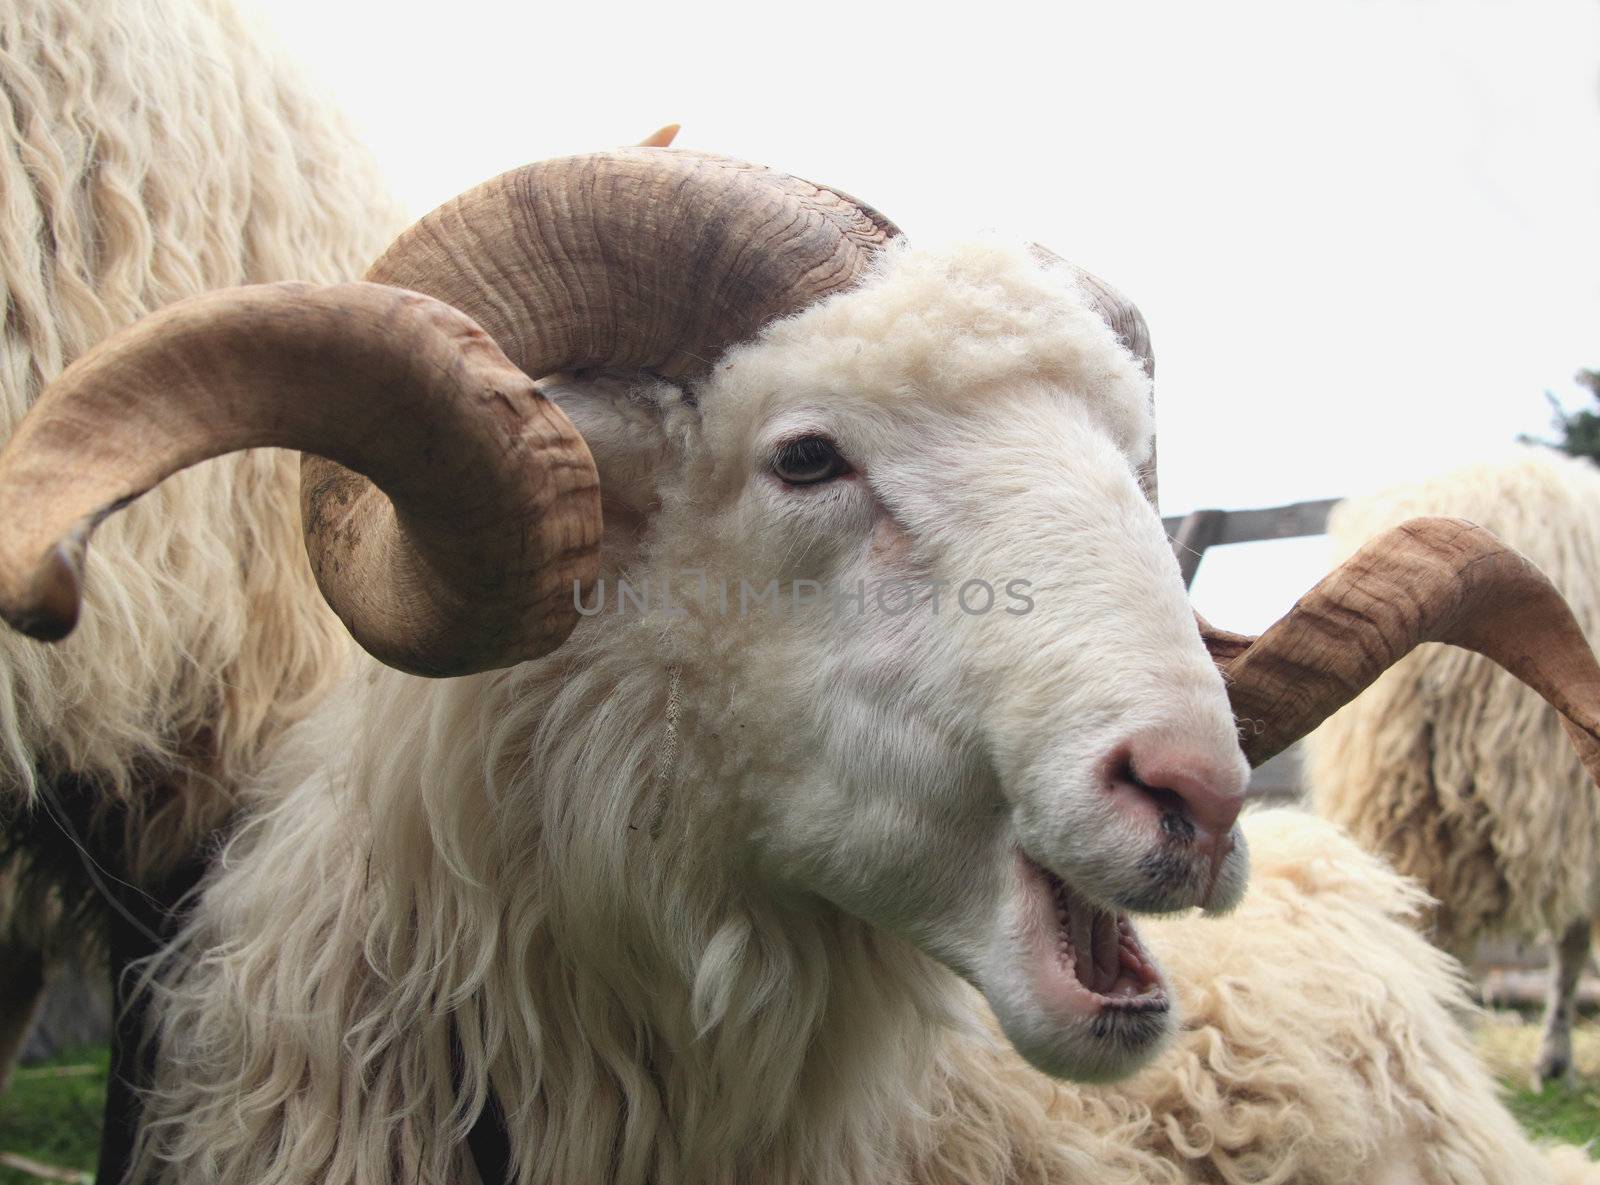 sheep ram by derausdo